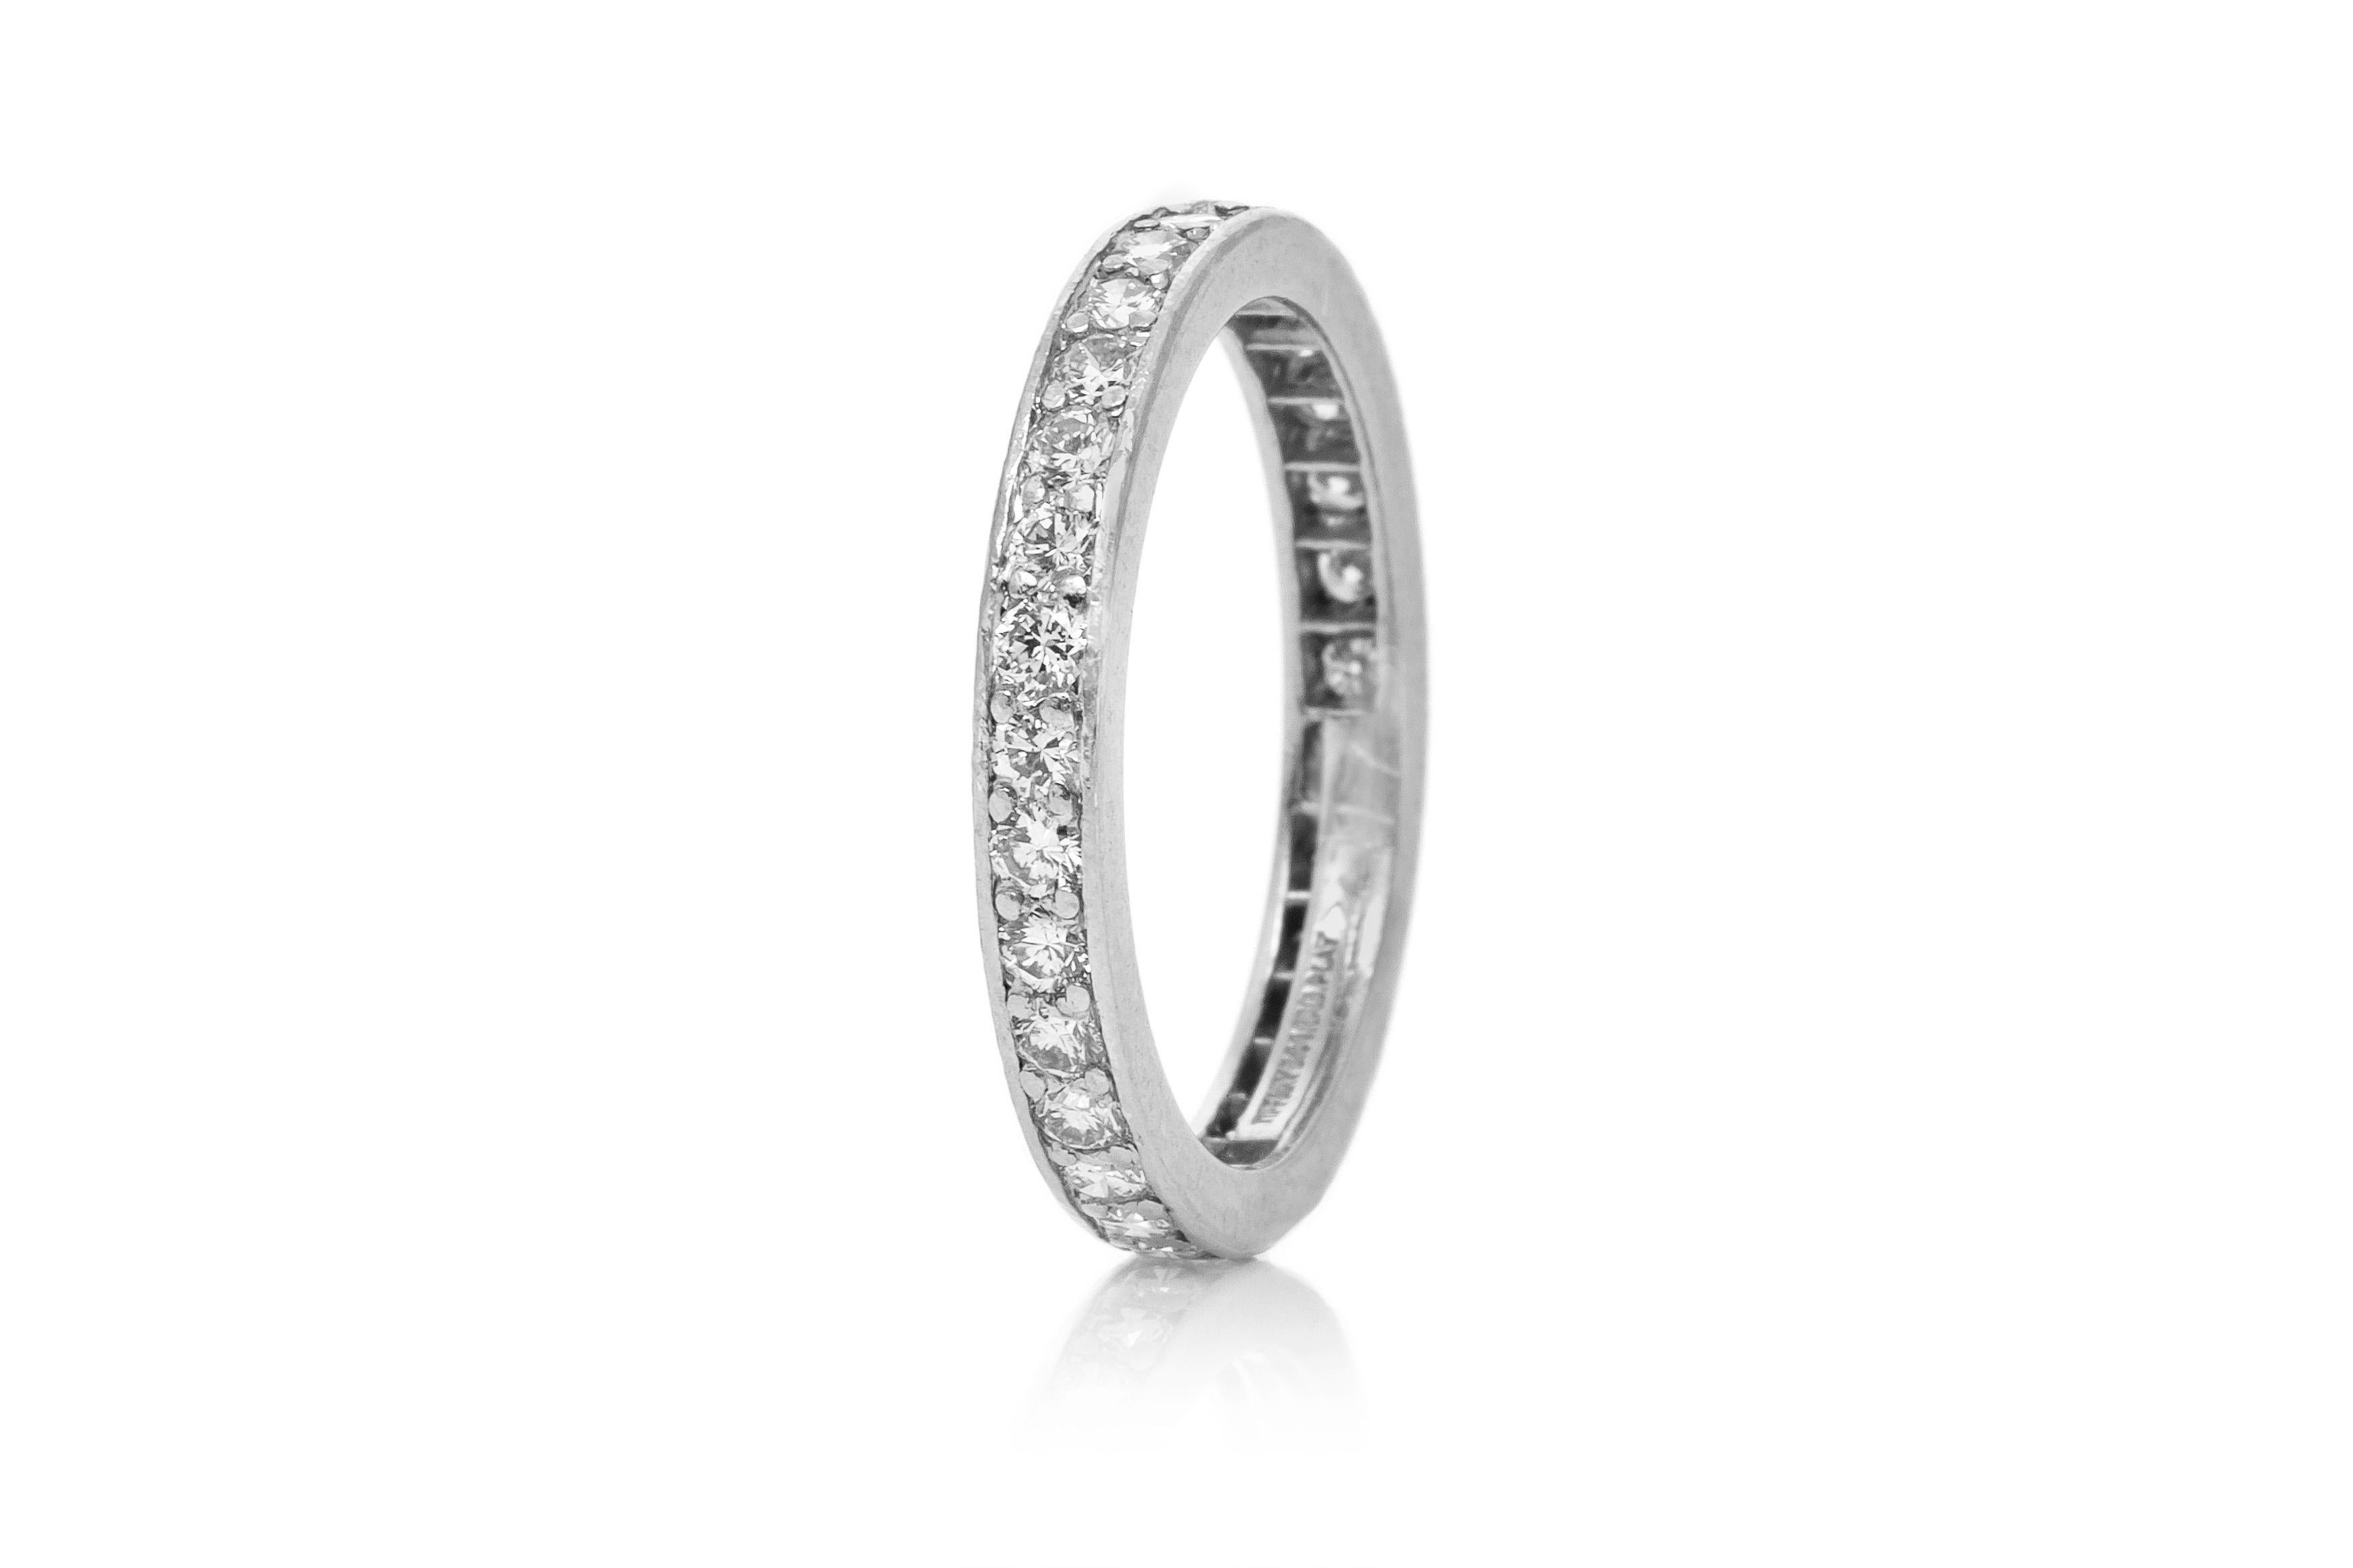 Fein gearbeitet aus Platin mit runden Diamanten im Brillantschliff mit einem Gesamtgewicht von etwa 1,80 Karat.
Signiert von Tiffany & Co.
Um 1960.